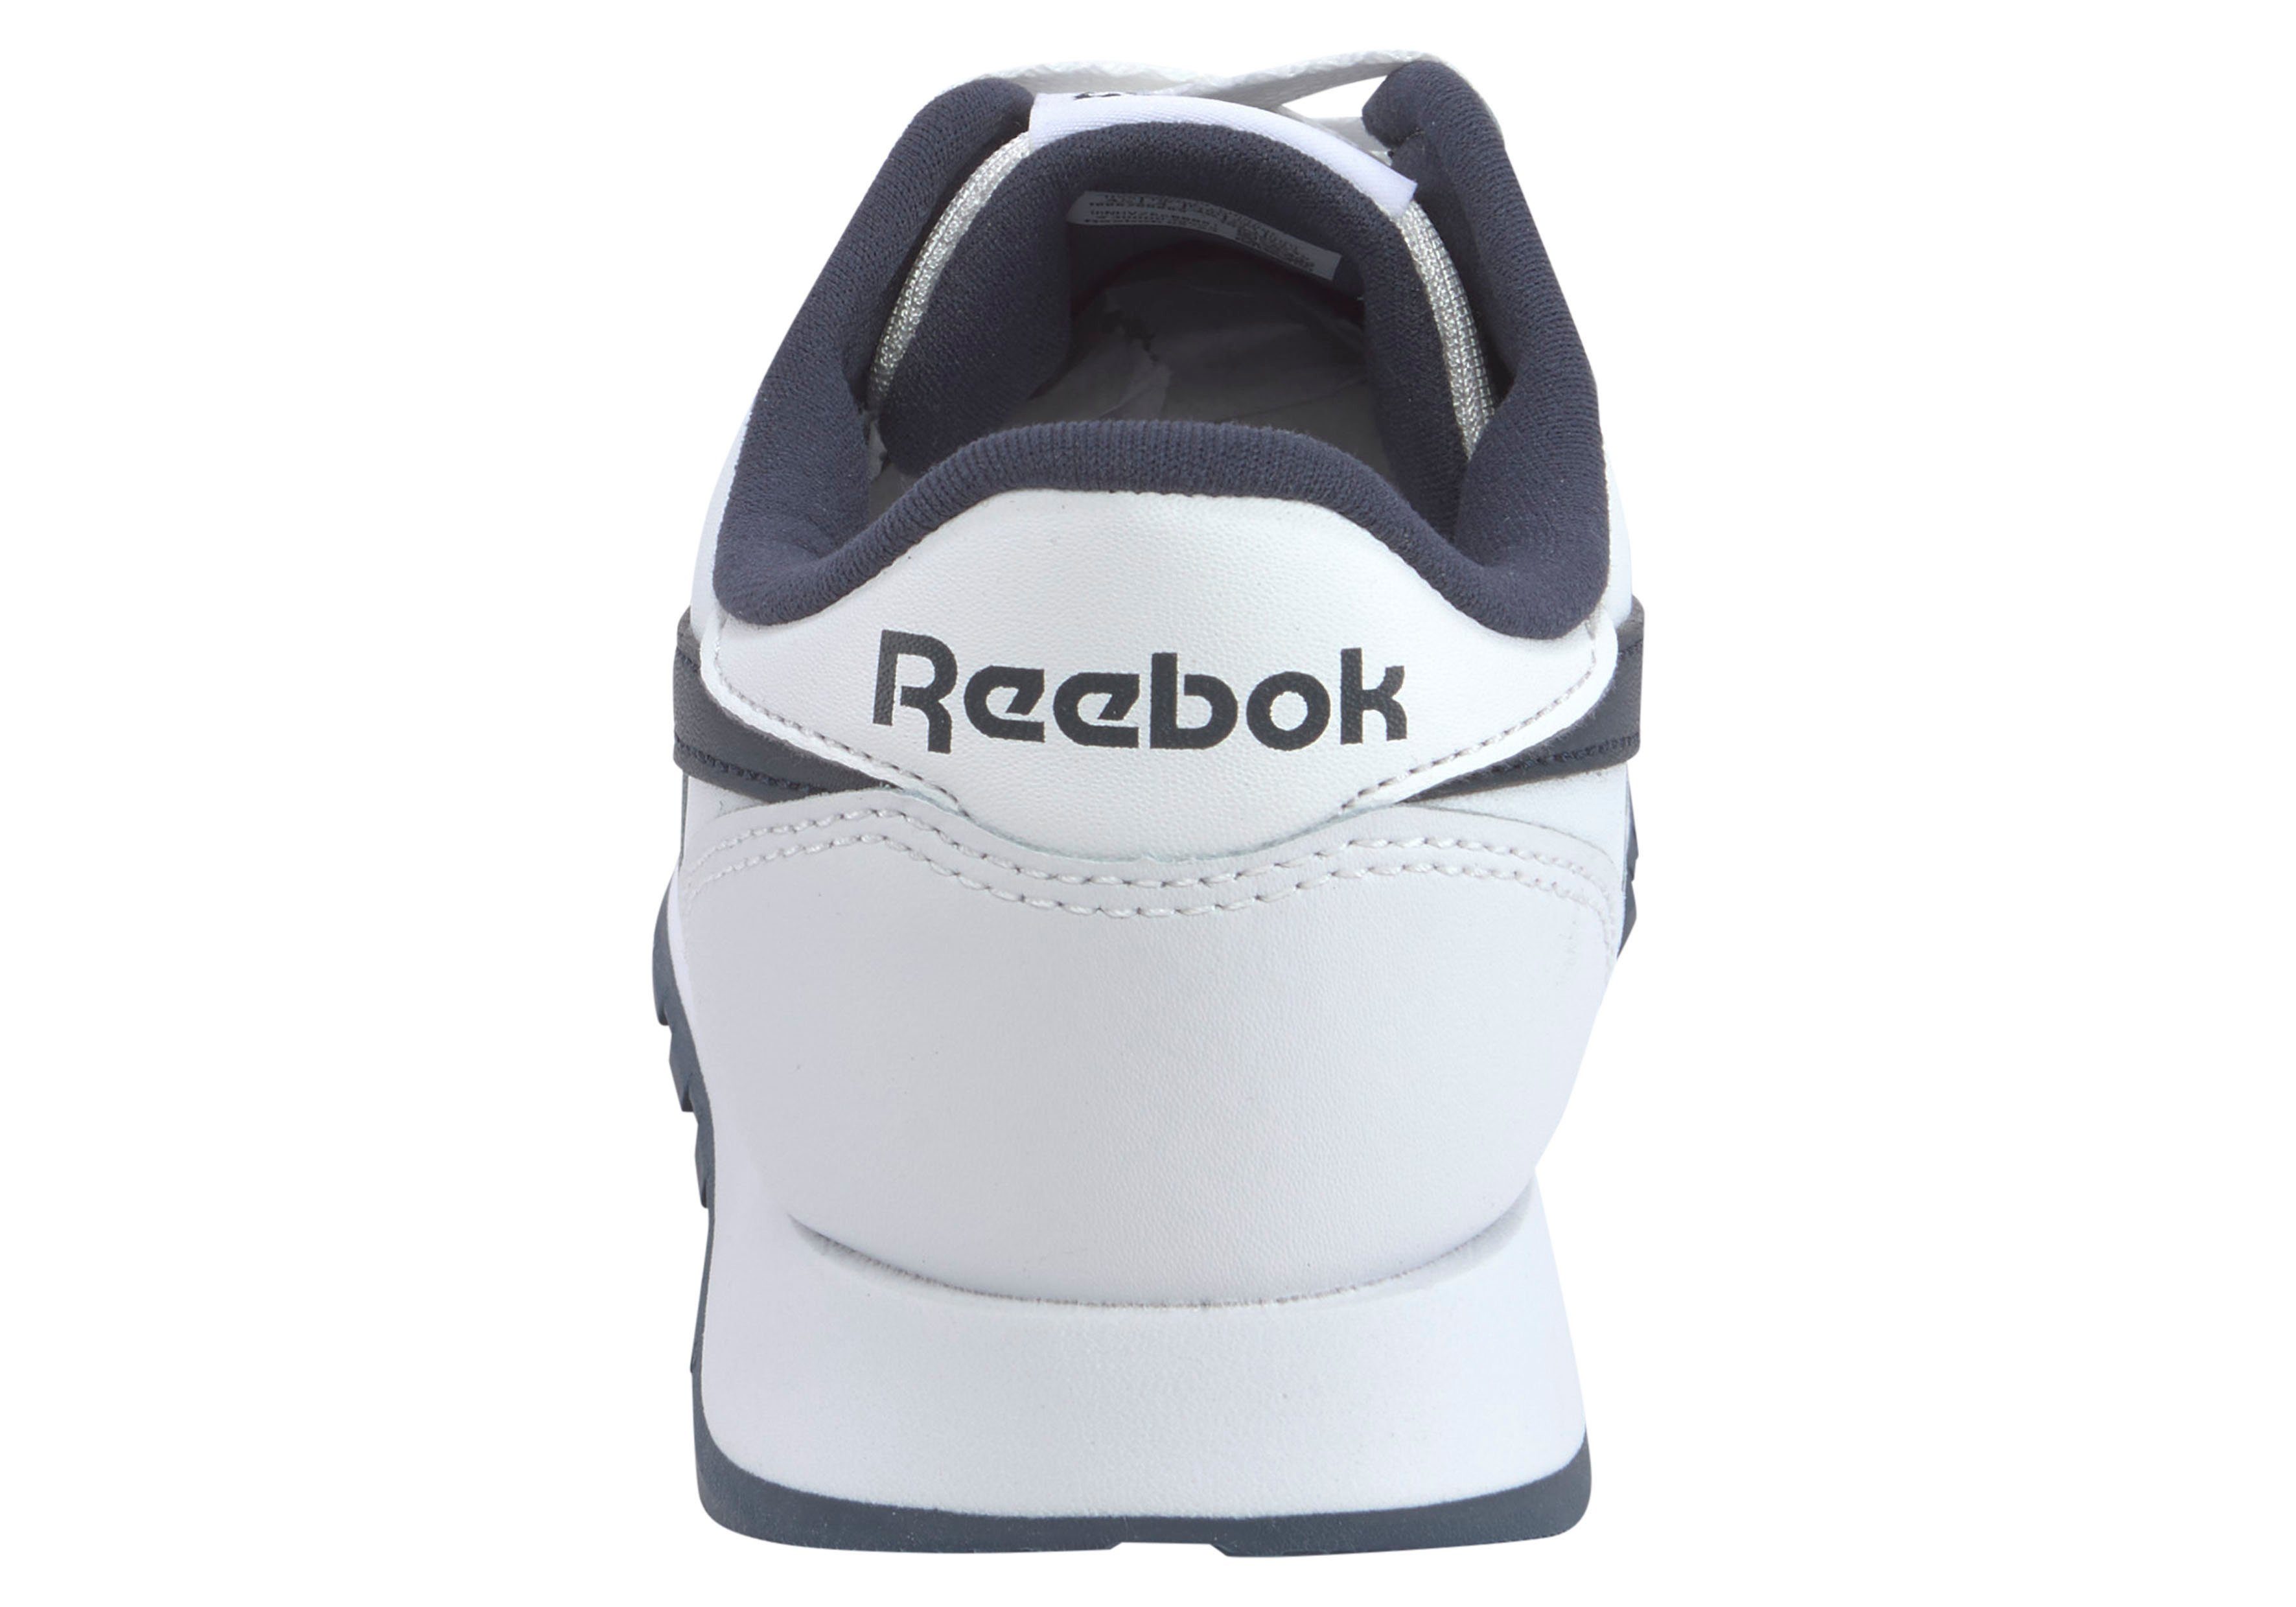 Reebok Classic LEATHER weiß-schwarz Sneaker CLASSIC